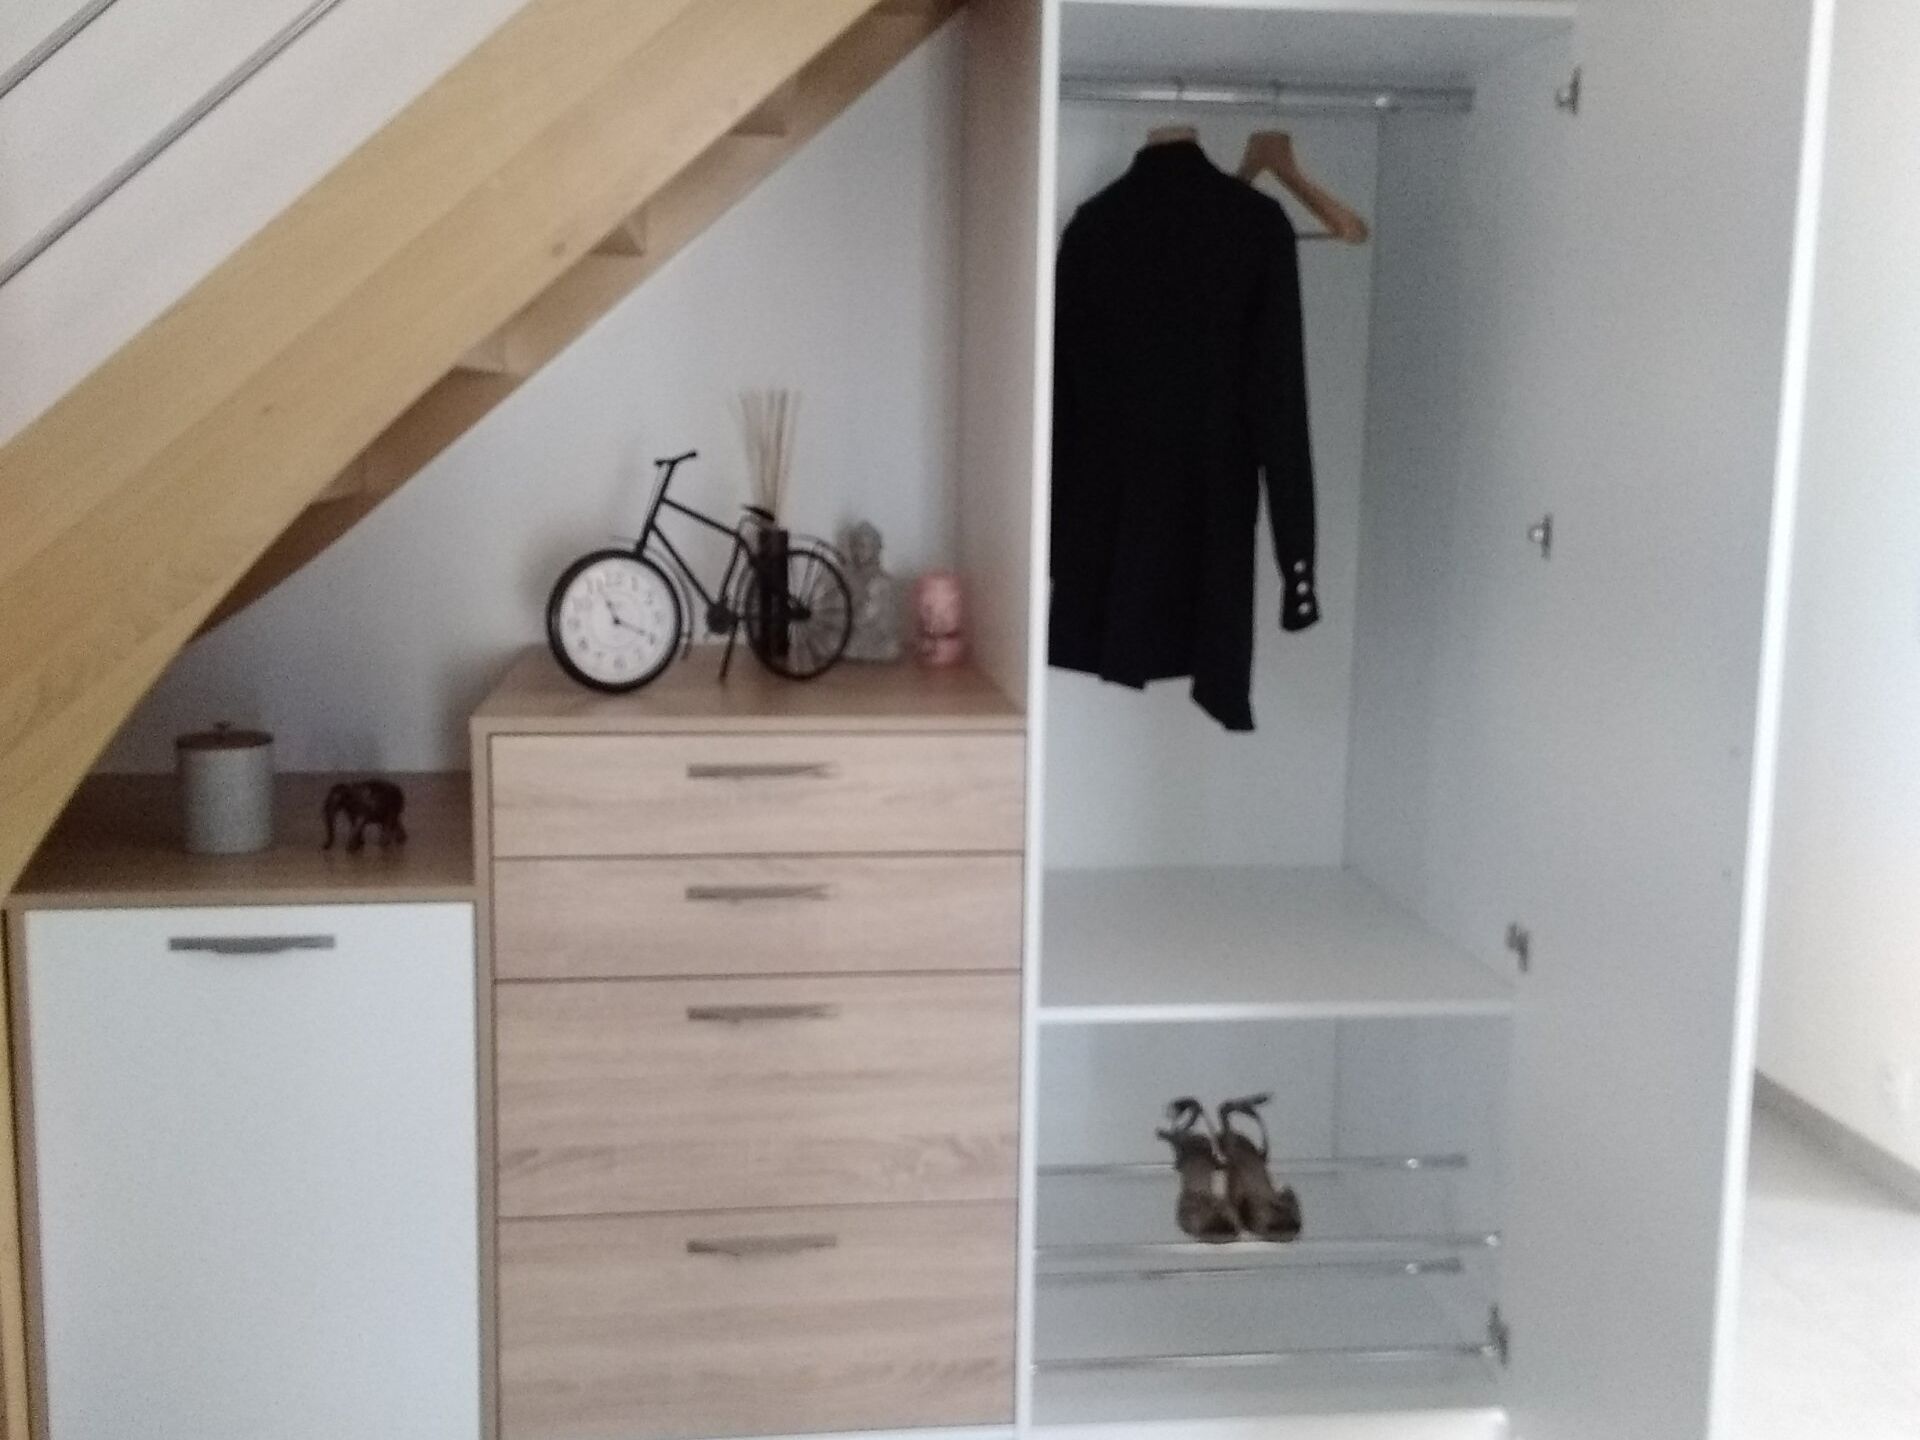 Rangements avec tiroirs et placards aménagés sous un escalier